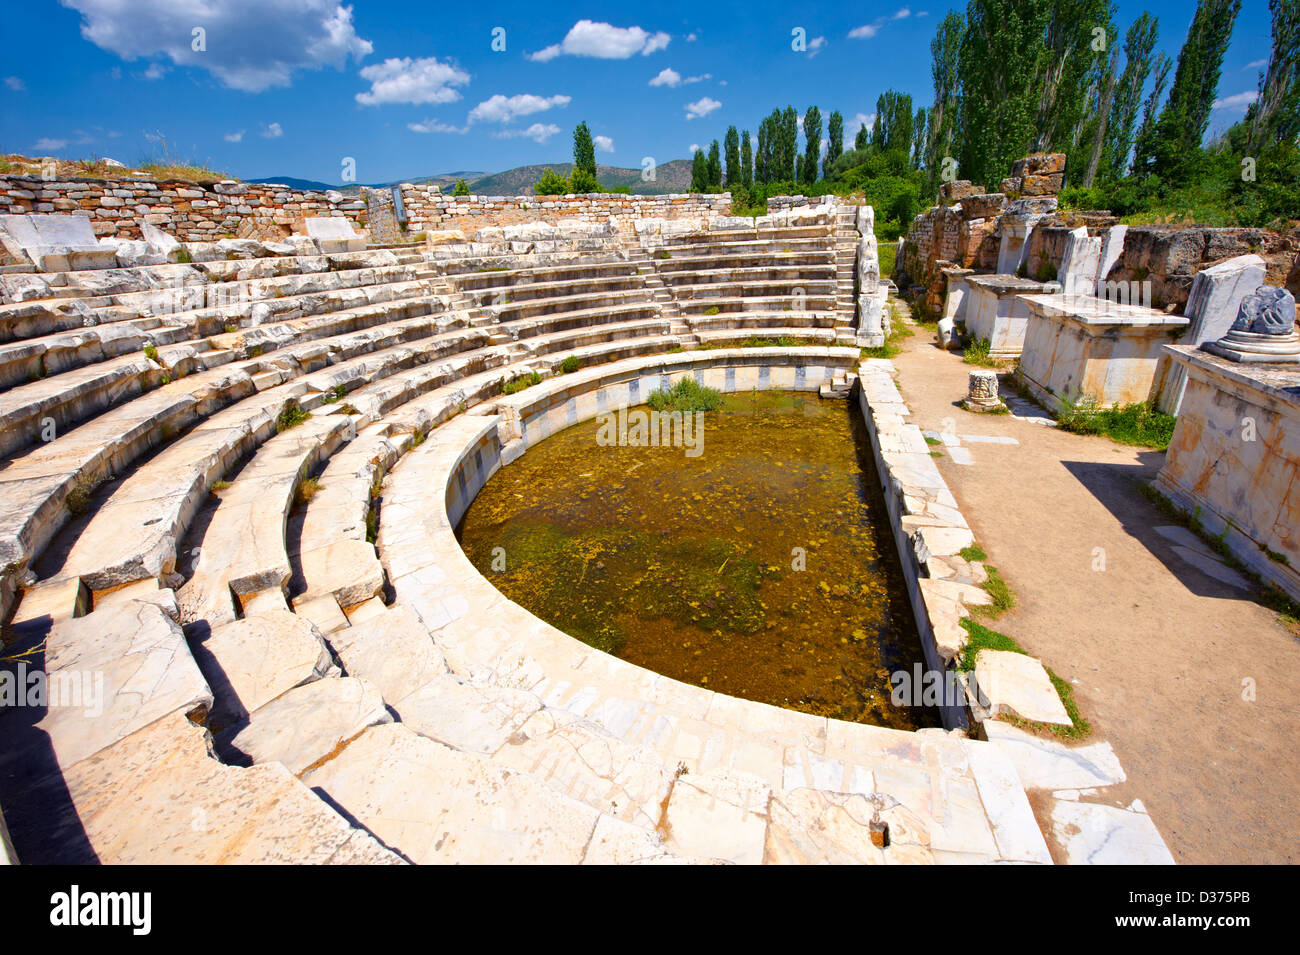 Théâtre de l'odéon romain site archéologique d'Aphrodisias, Turquie Banque D'Images